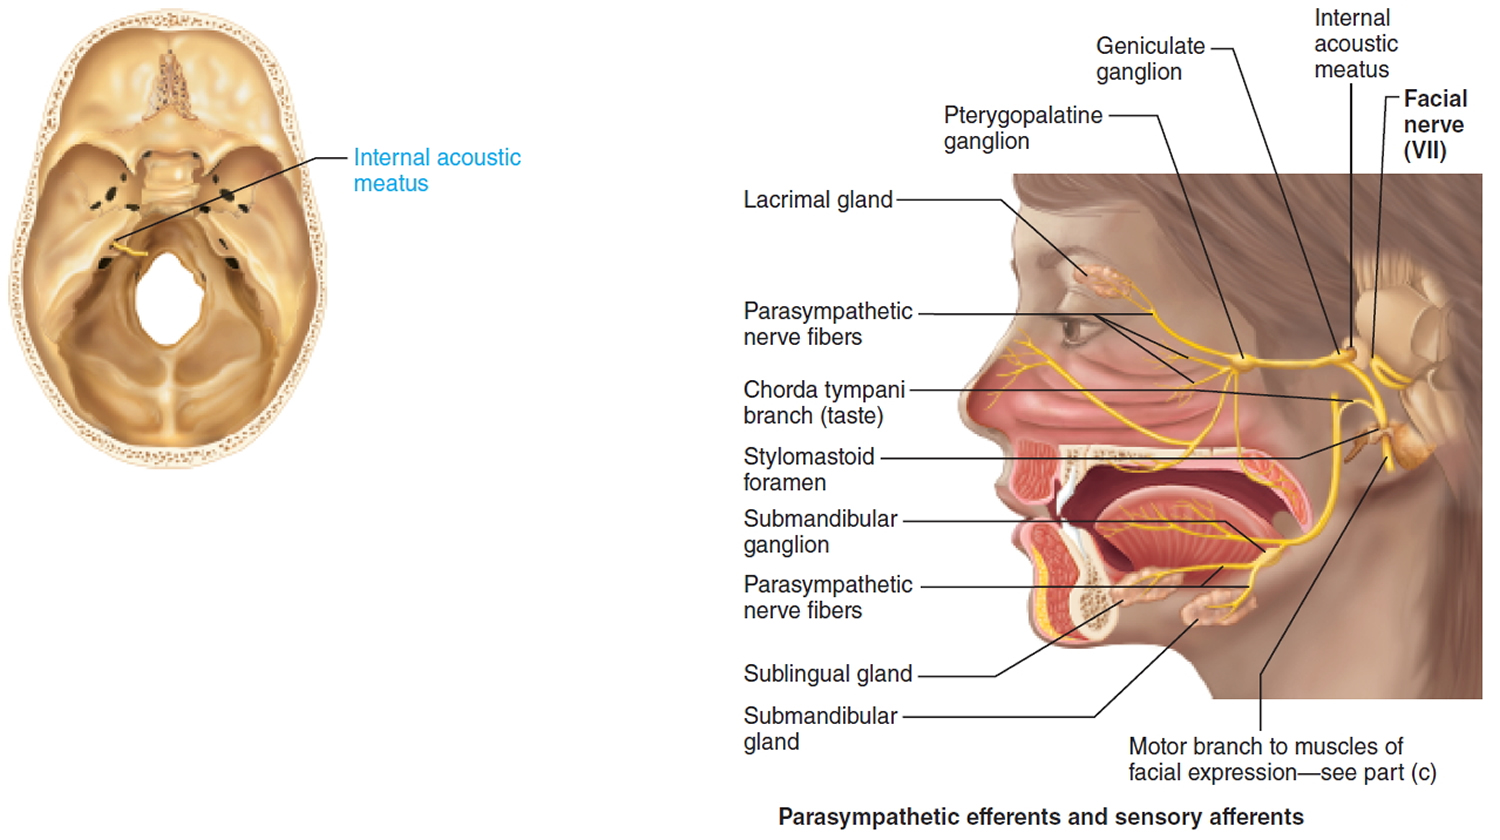 facial nerve - cranial nerve 7